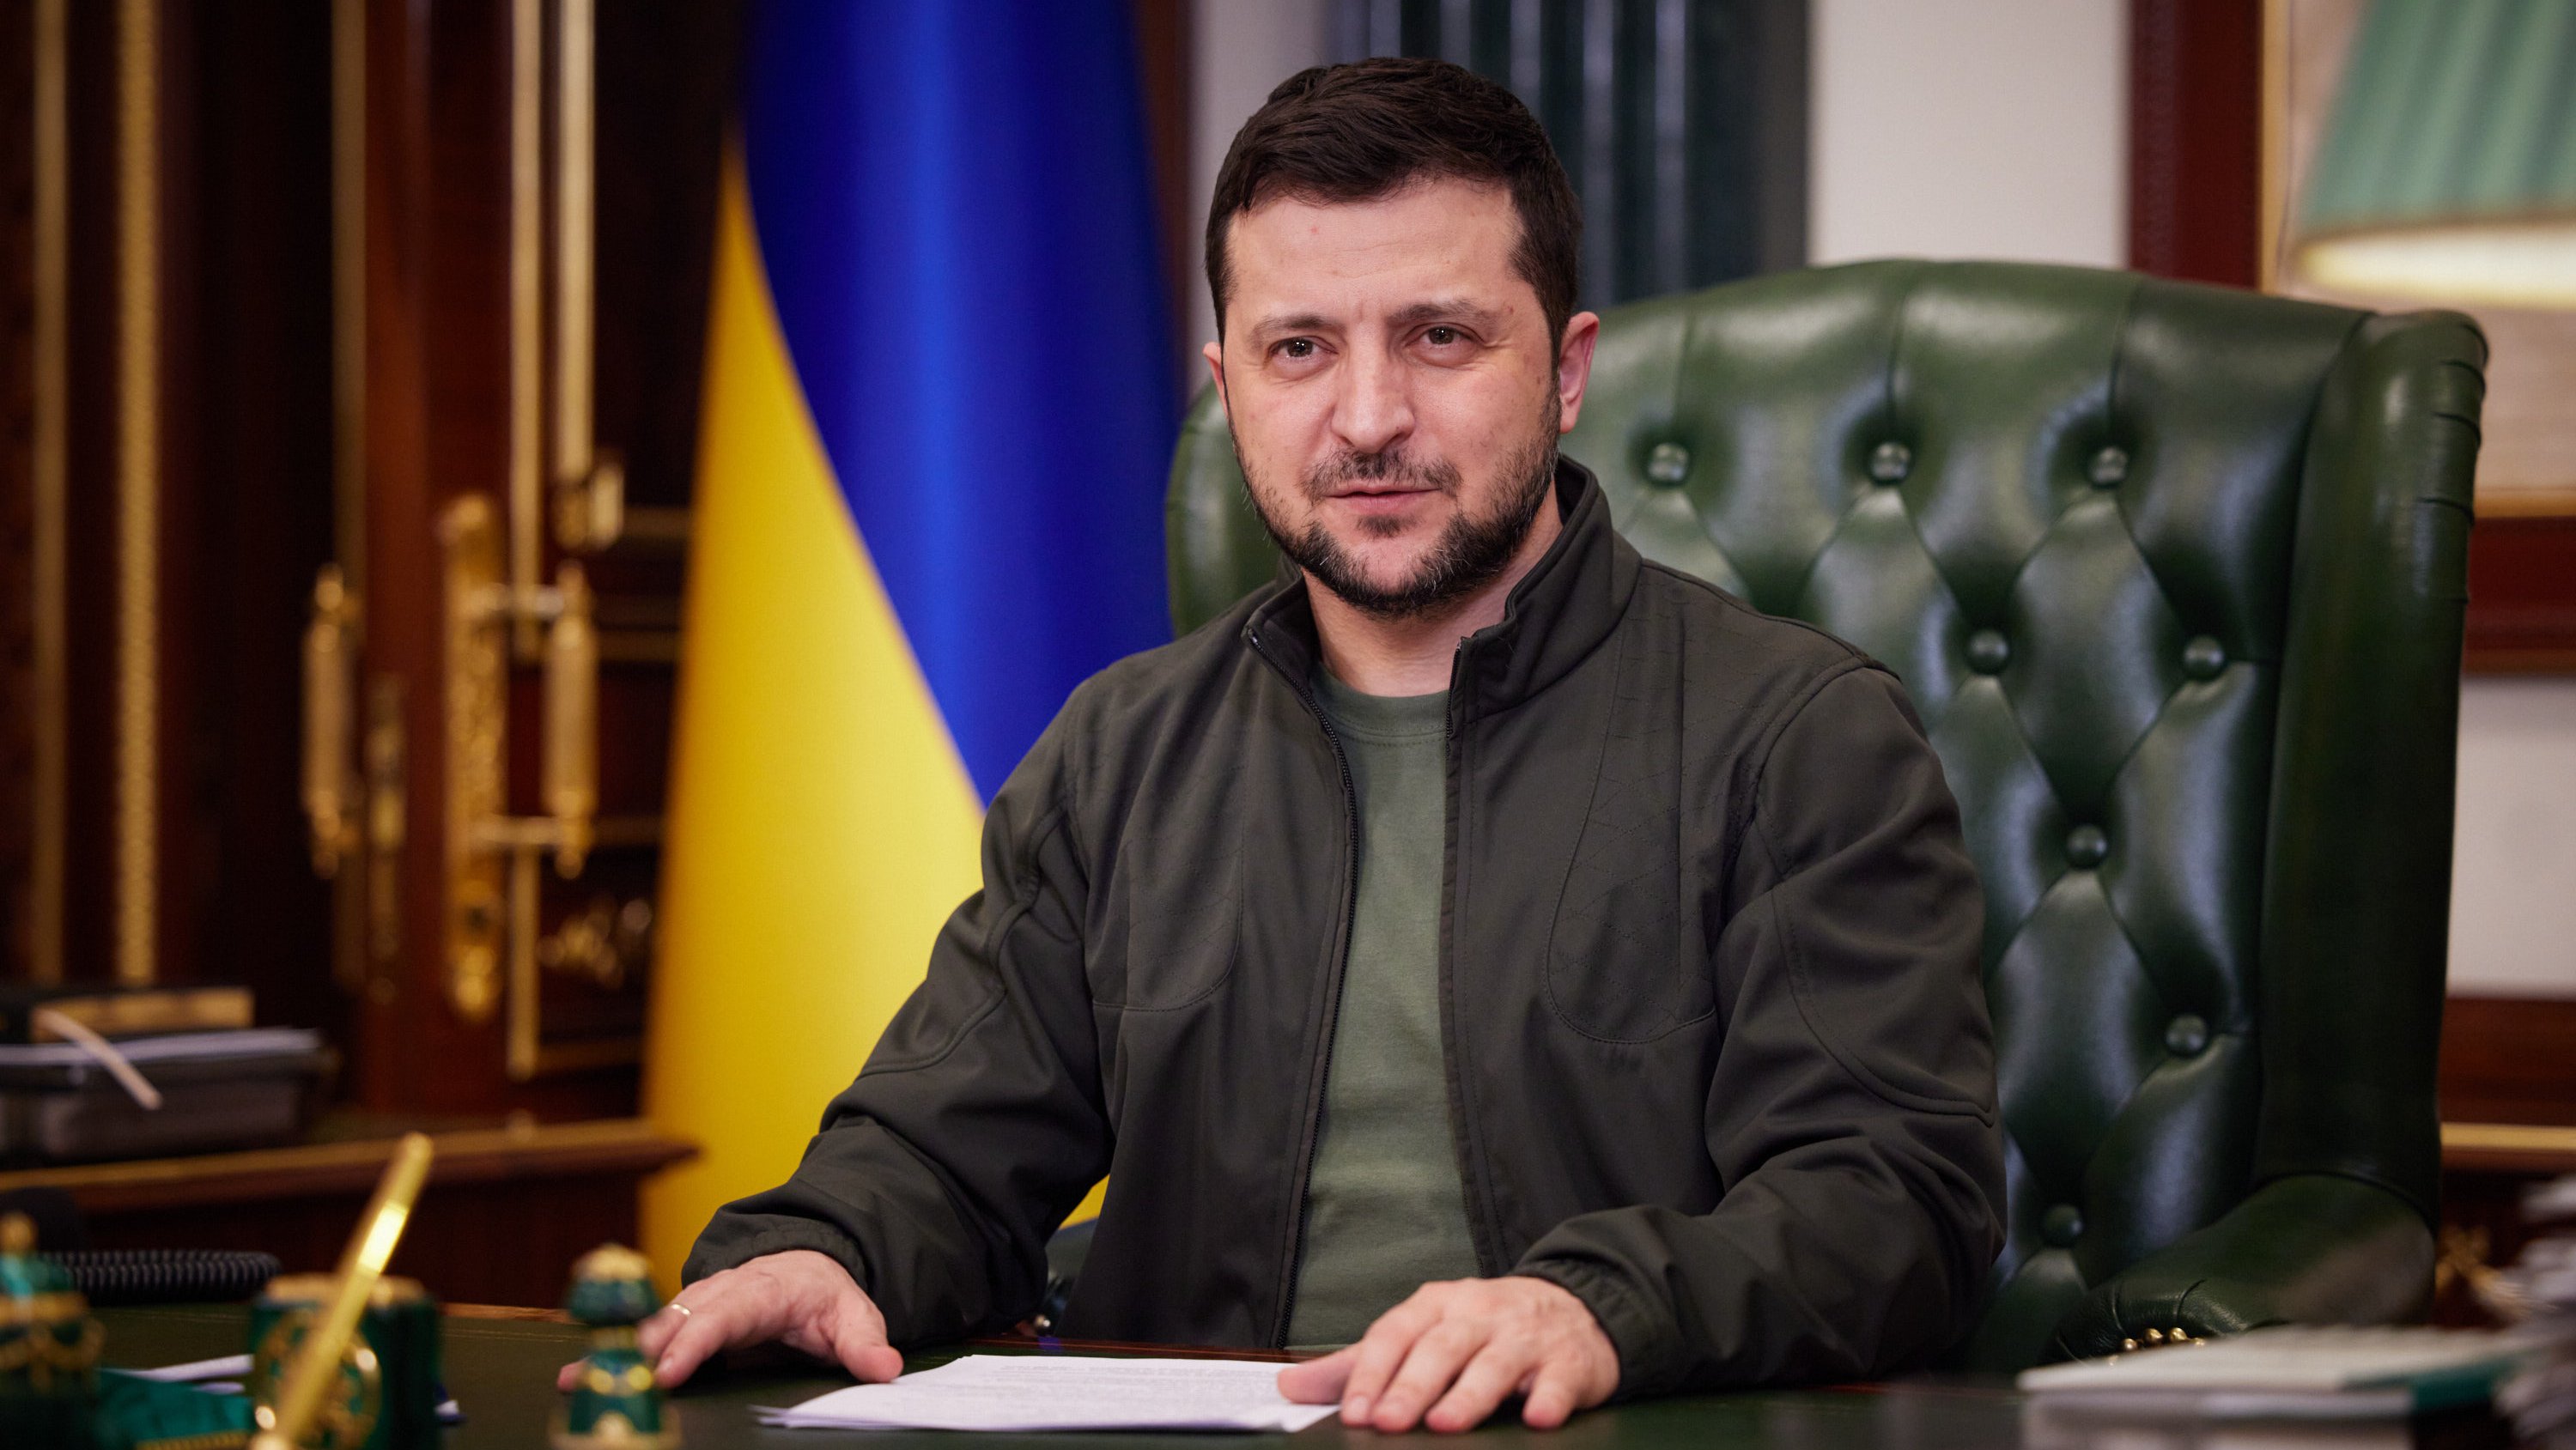 Zelensky admite saída de forças ucranianas de Azovstal: “Estamos a trabalhar para retirar todos os nossos militares” – Observador